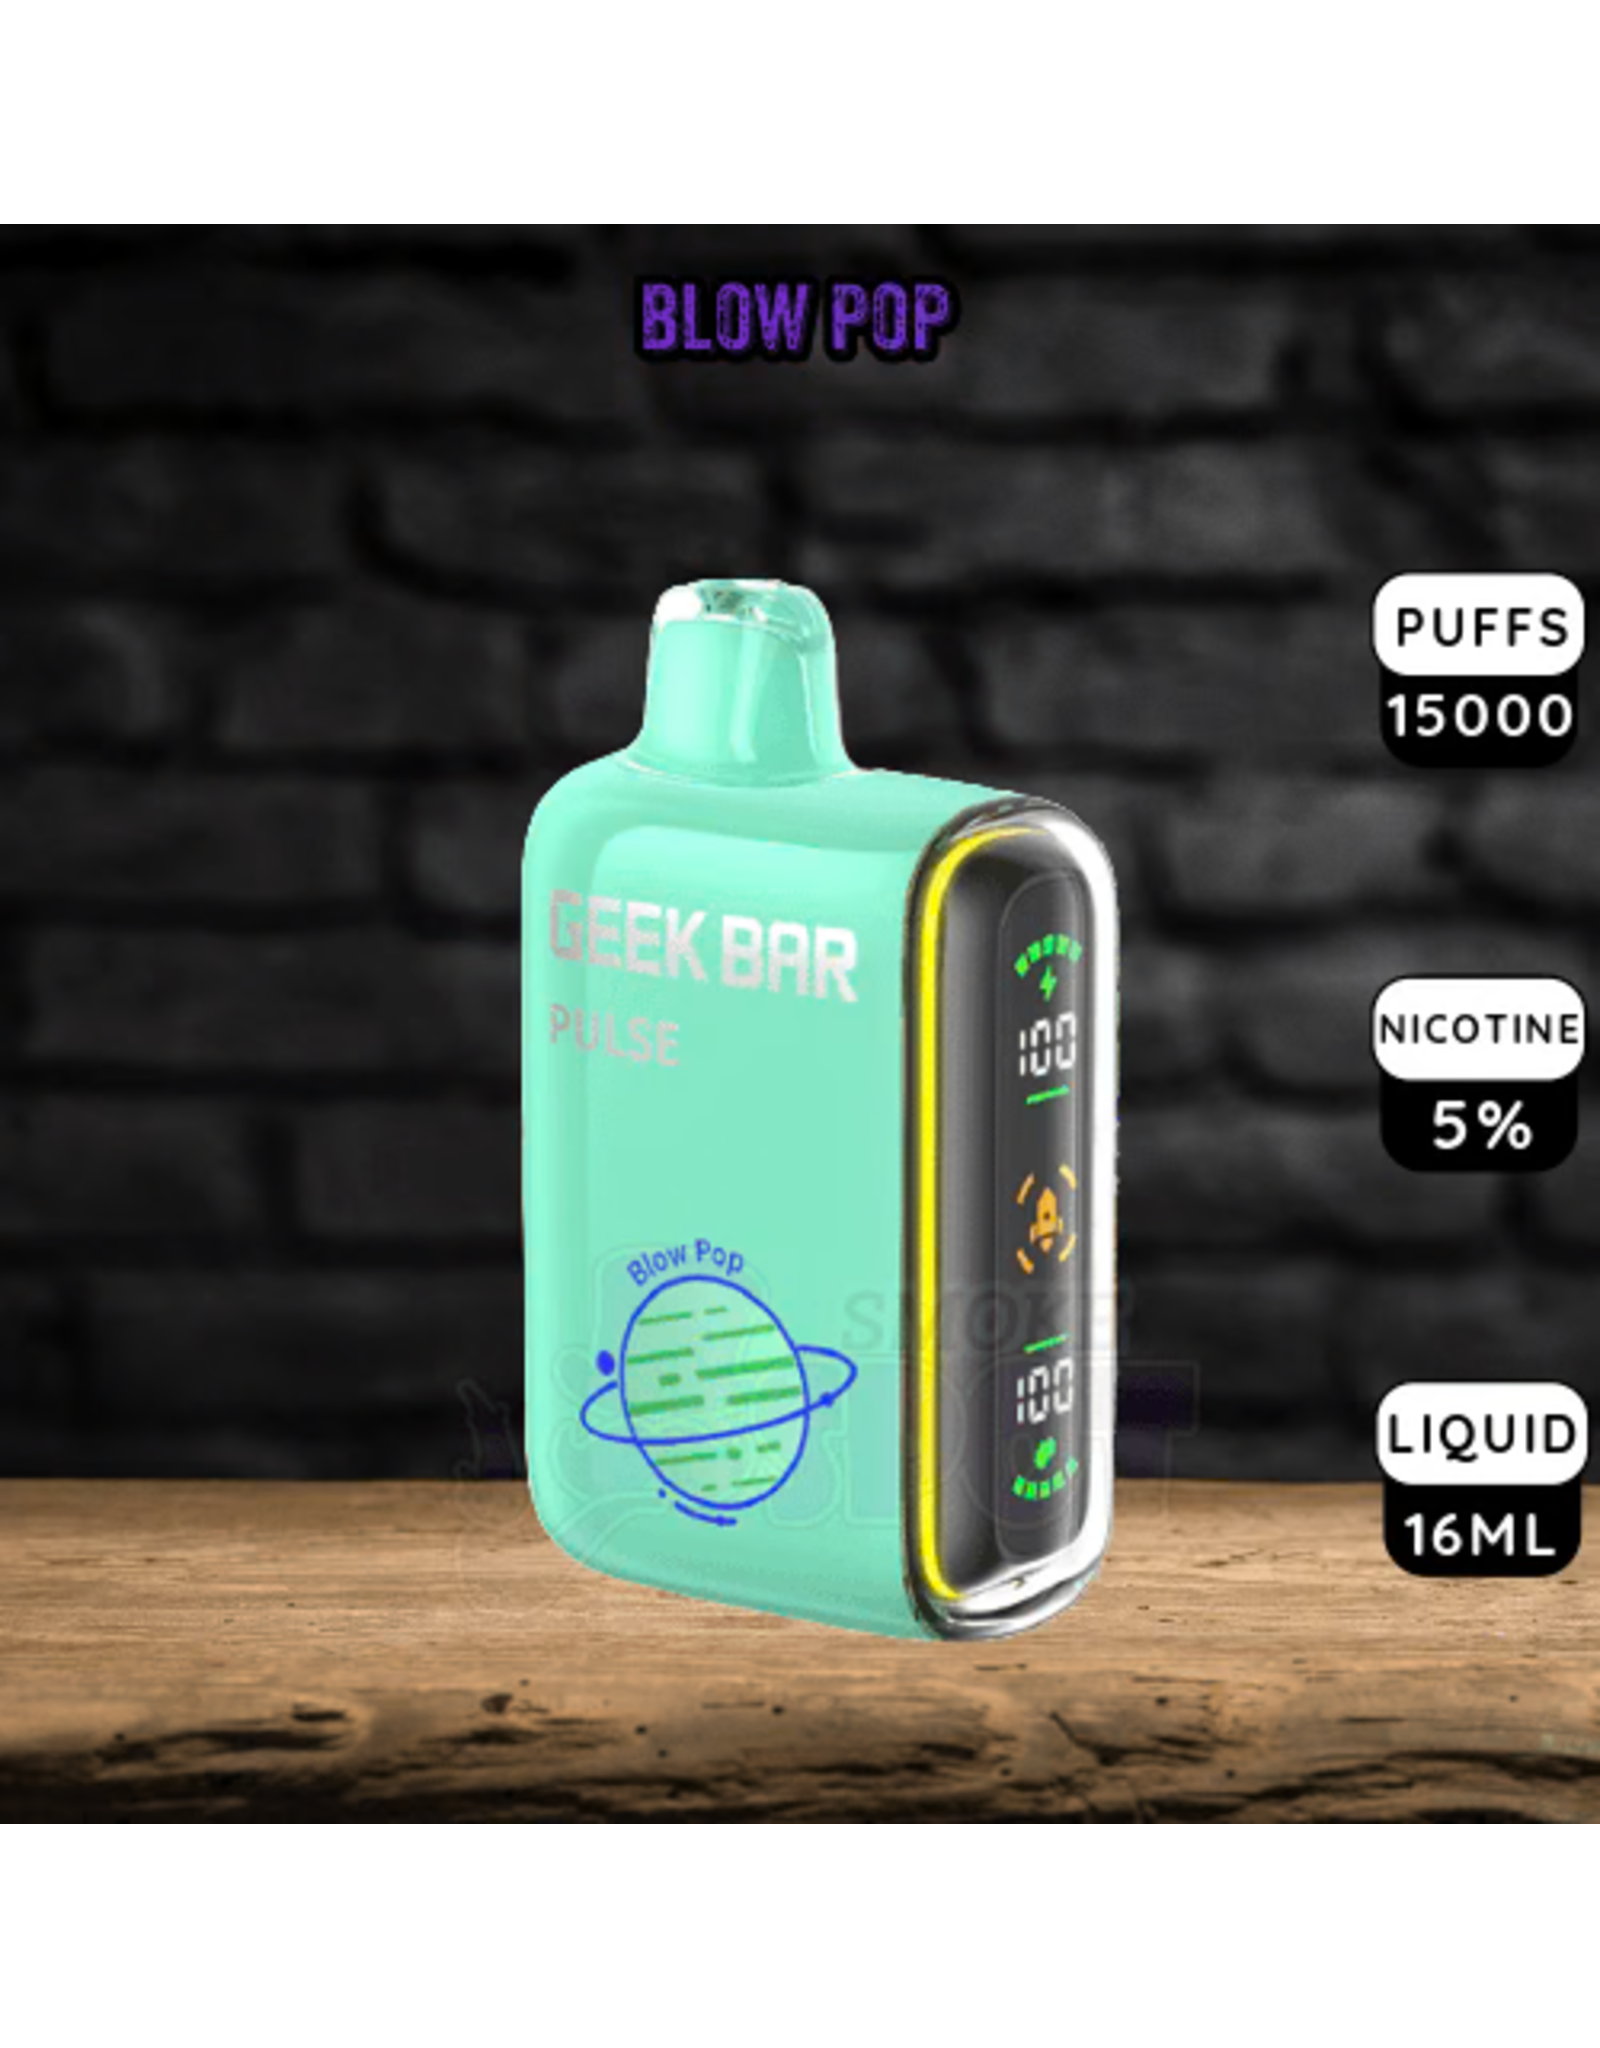 Geek Bar Geek Bar Pulse 10000 Puffs-Blow Pop-5pk Box